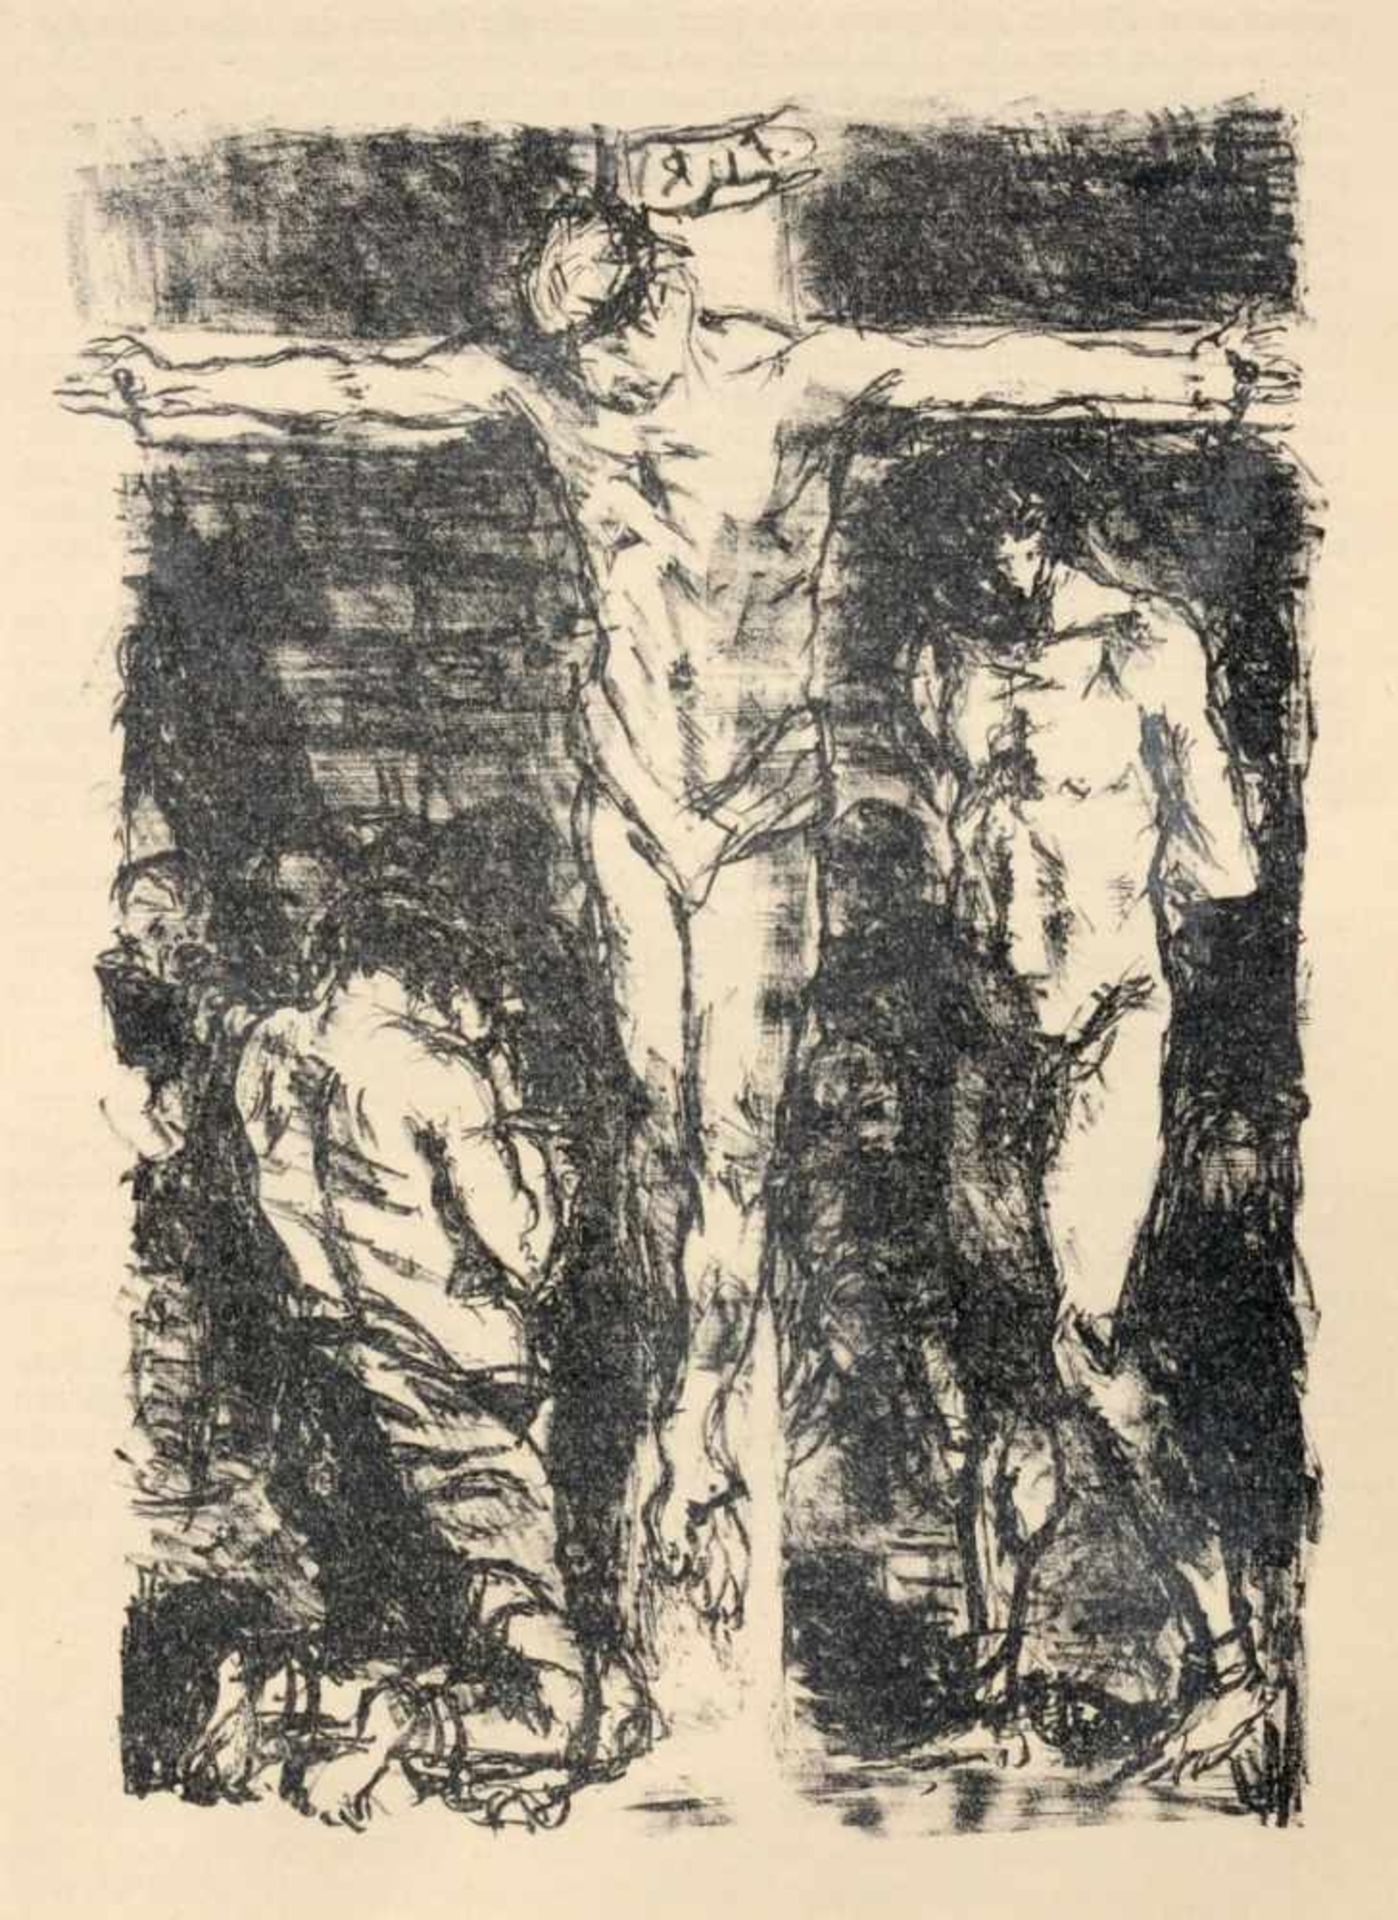 Max Beckmann, Sieben Illustrationen zu Dostojewskijs "Aus einem Totenhaus". 1913.Max Beckmann 1884 - Bild 7 aus 7